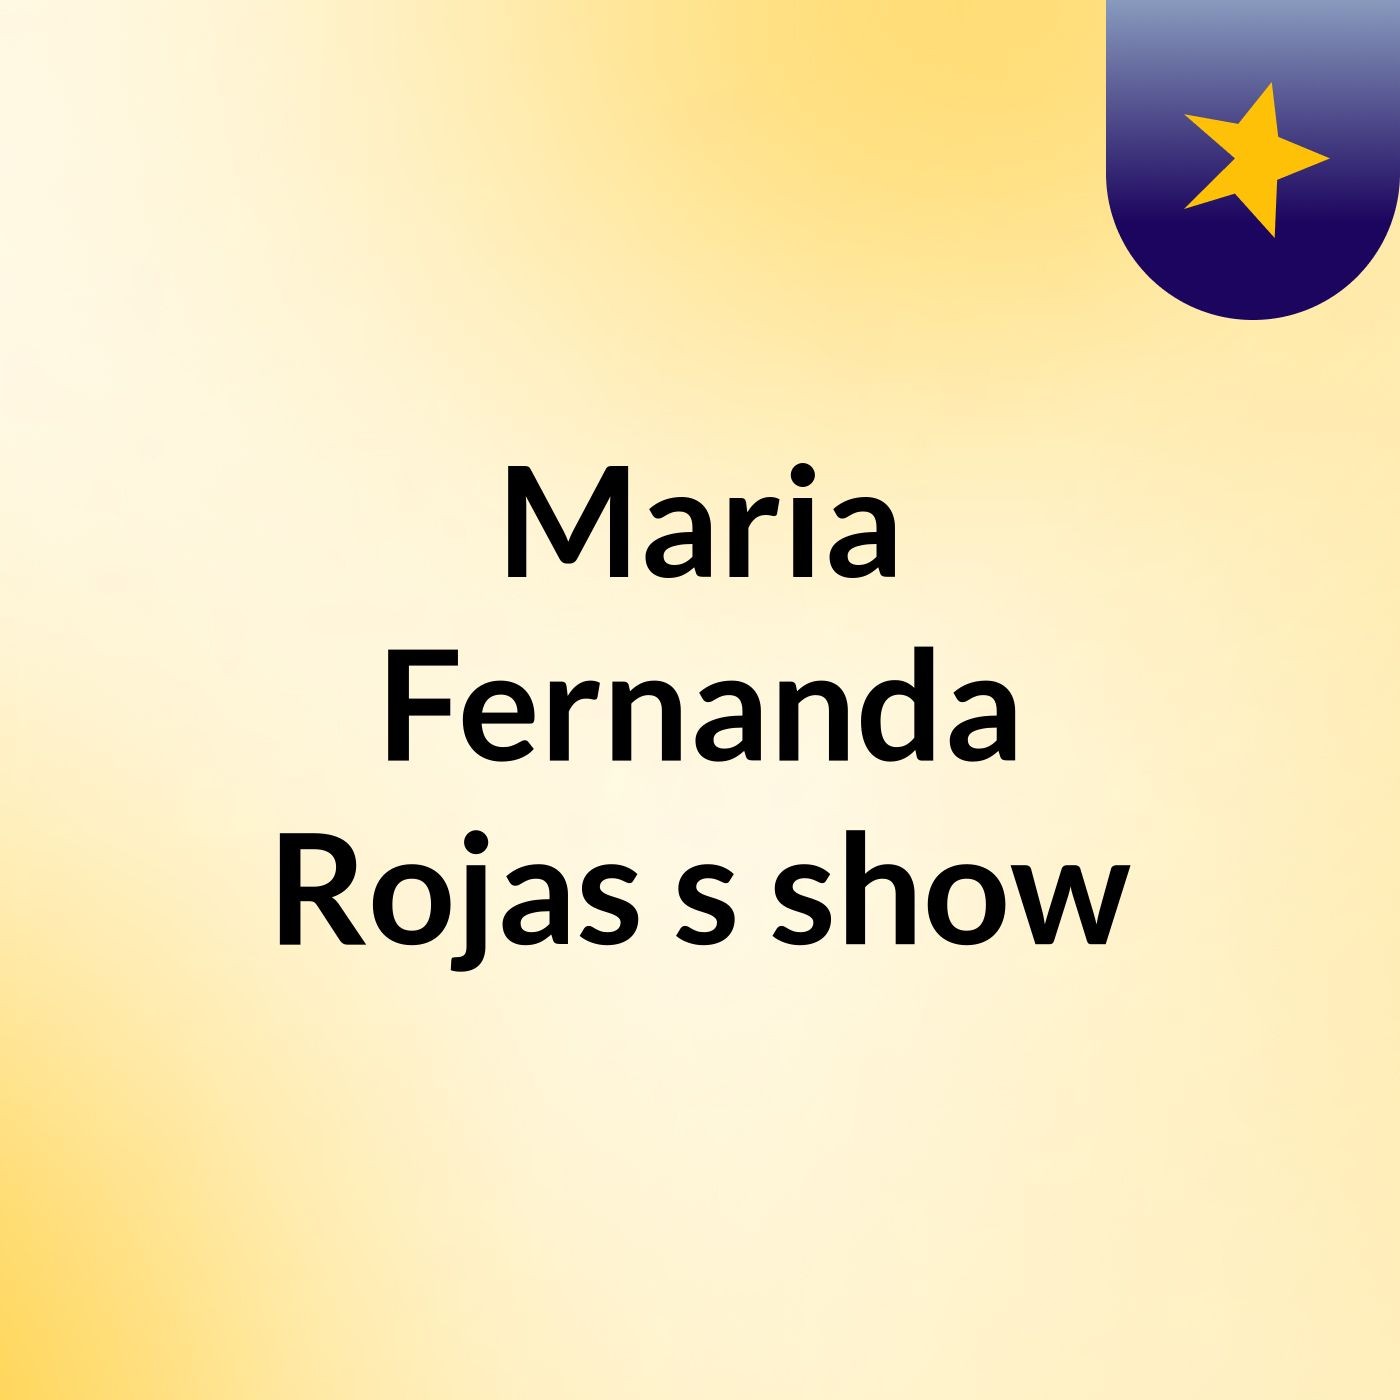 Maria Fernanda Rojas's show